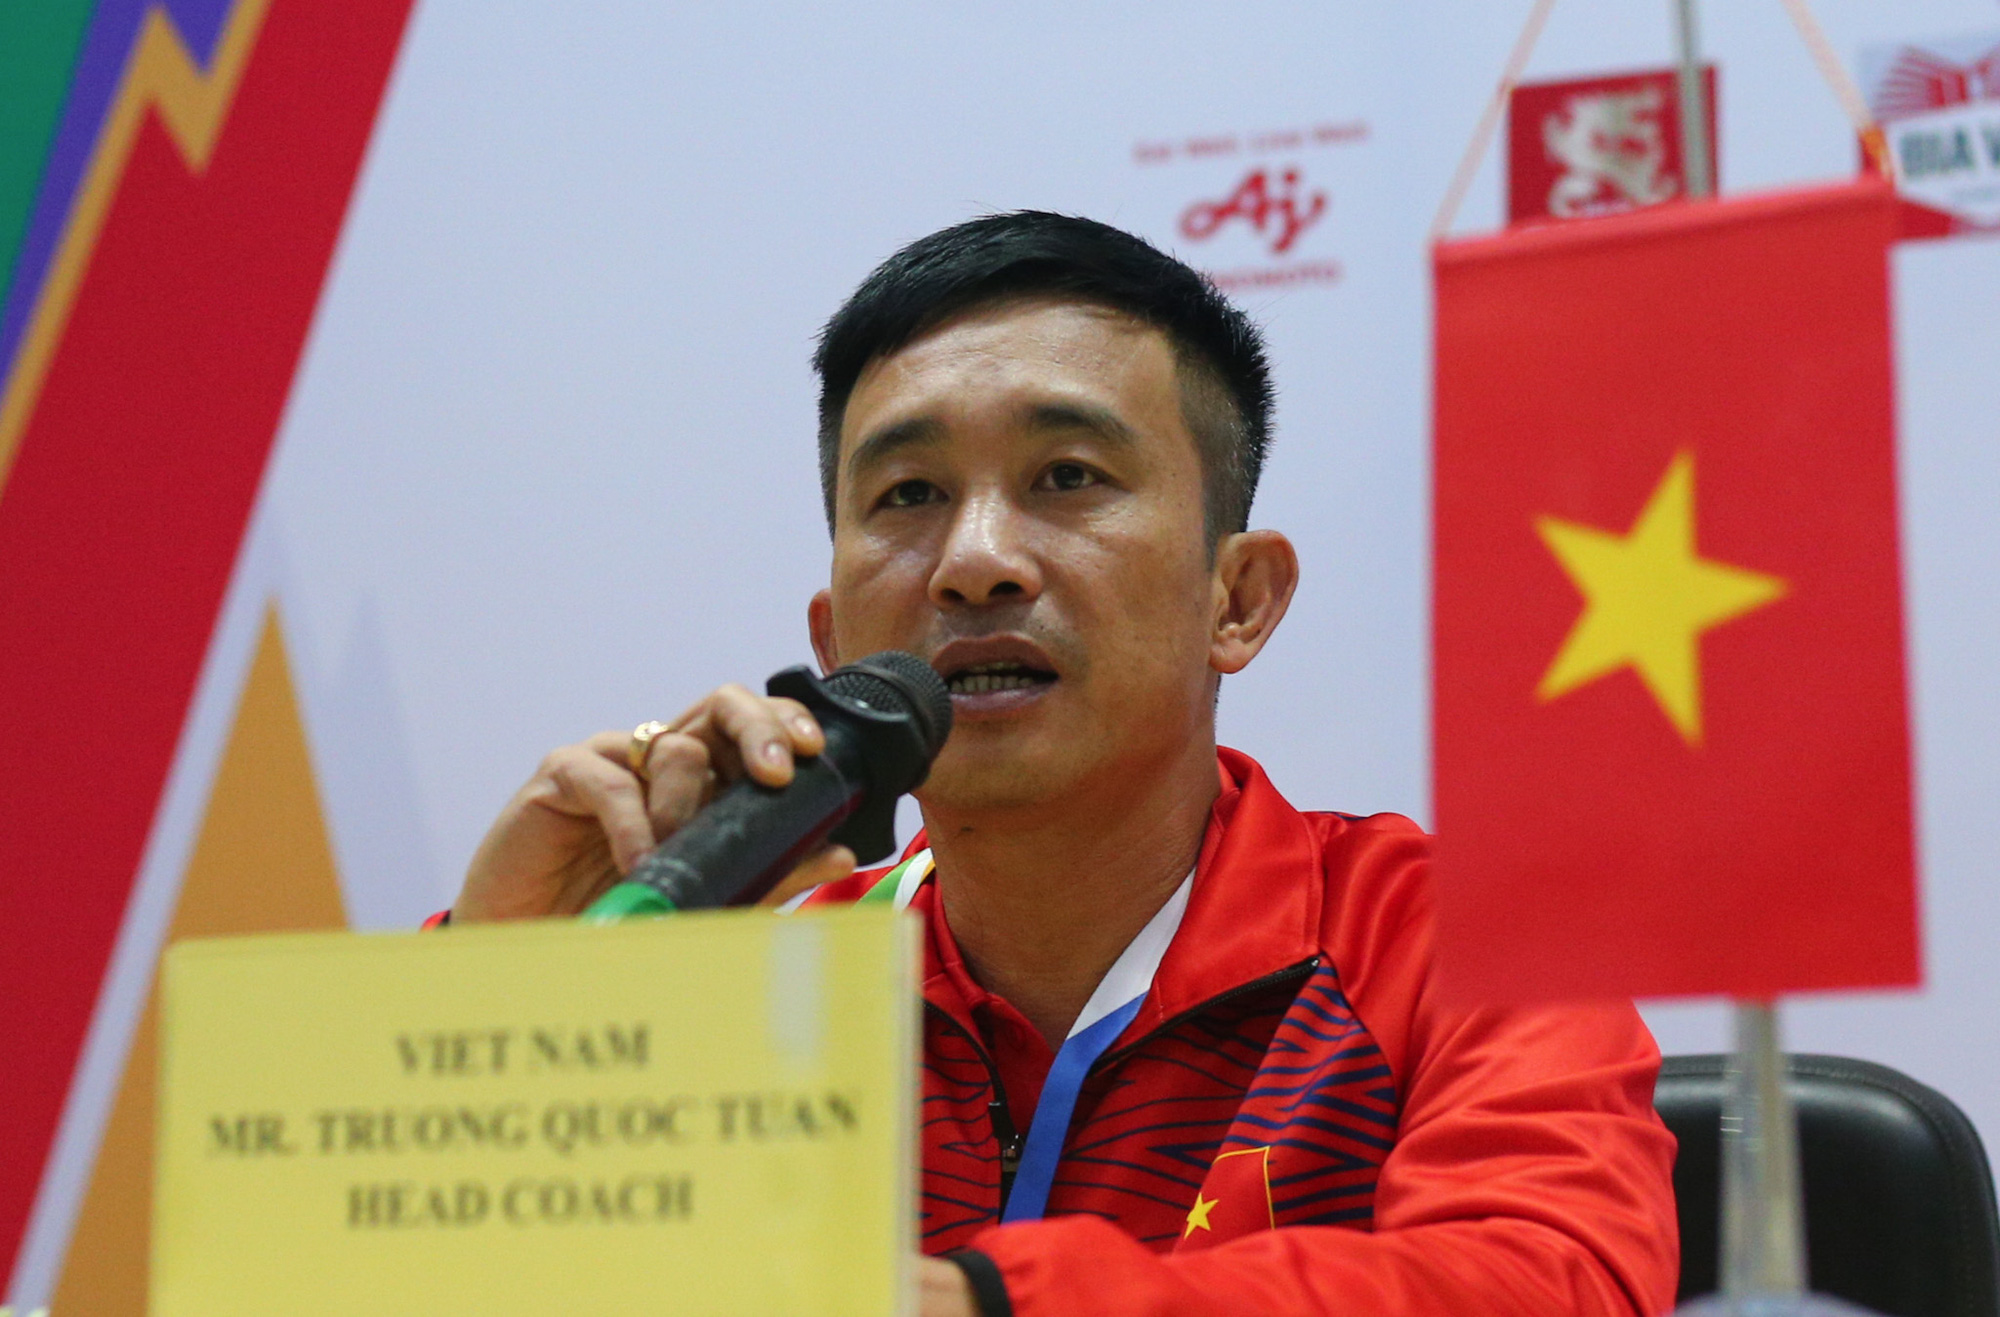 Đánh bại Myanmar, ĐT futsal nữ Việt Nam dẫn đầu BXH futsal nữ SEA Games 31